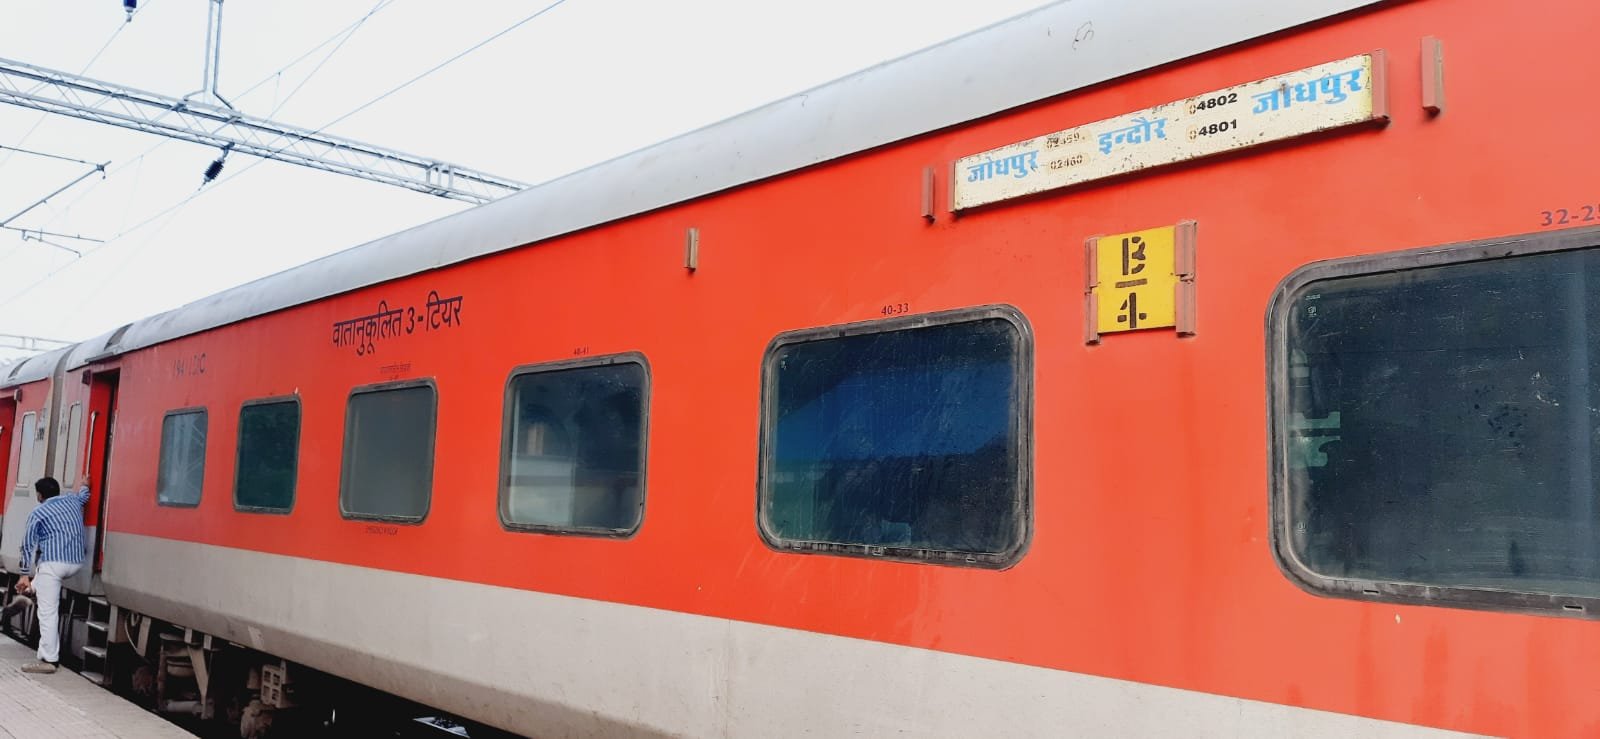 जोधपुर-इंदौर ट्रेन के पहिए की स्प्रिंग टूटी, कर्मचारी न देखता तो होता हादसा